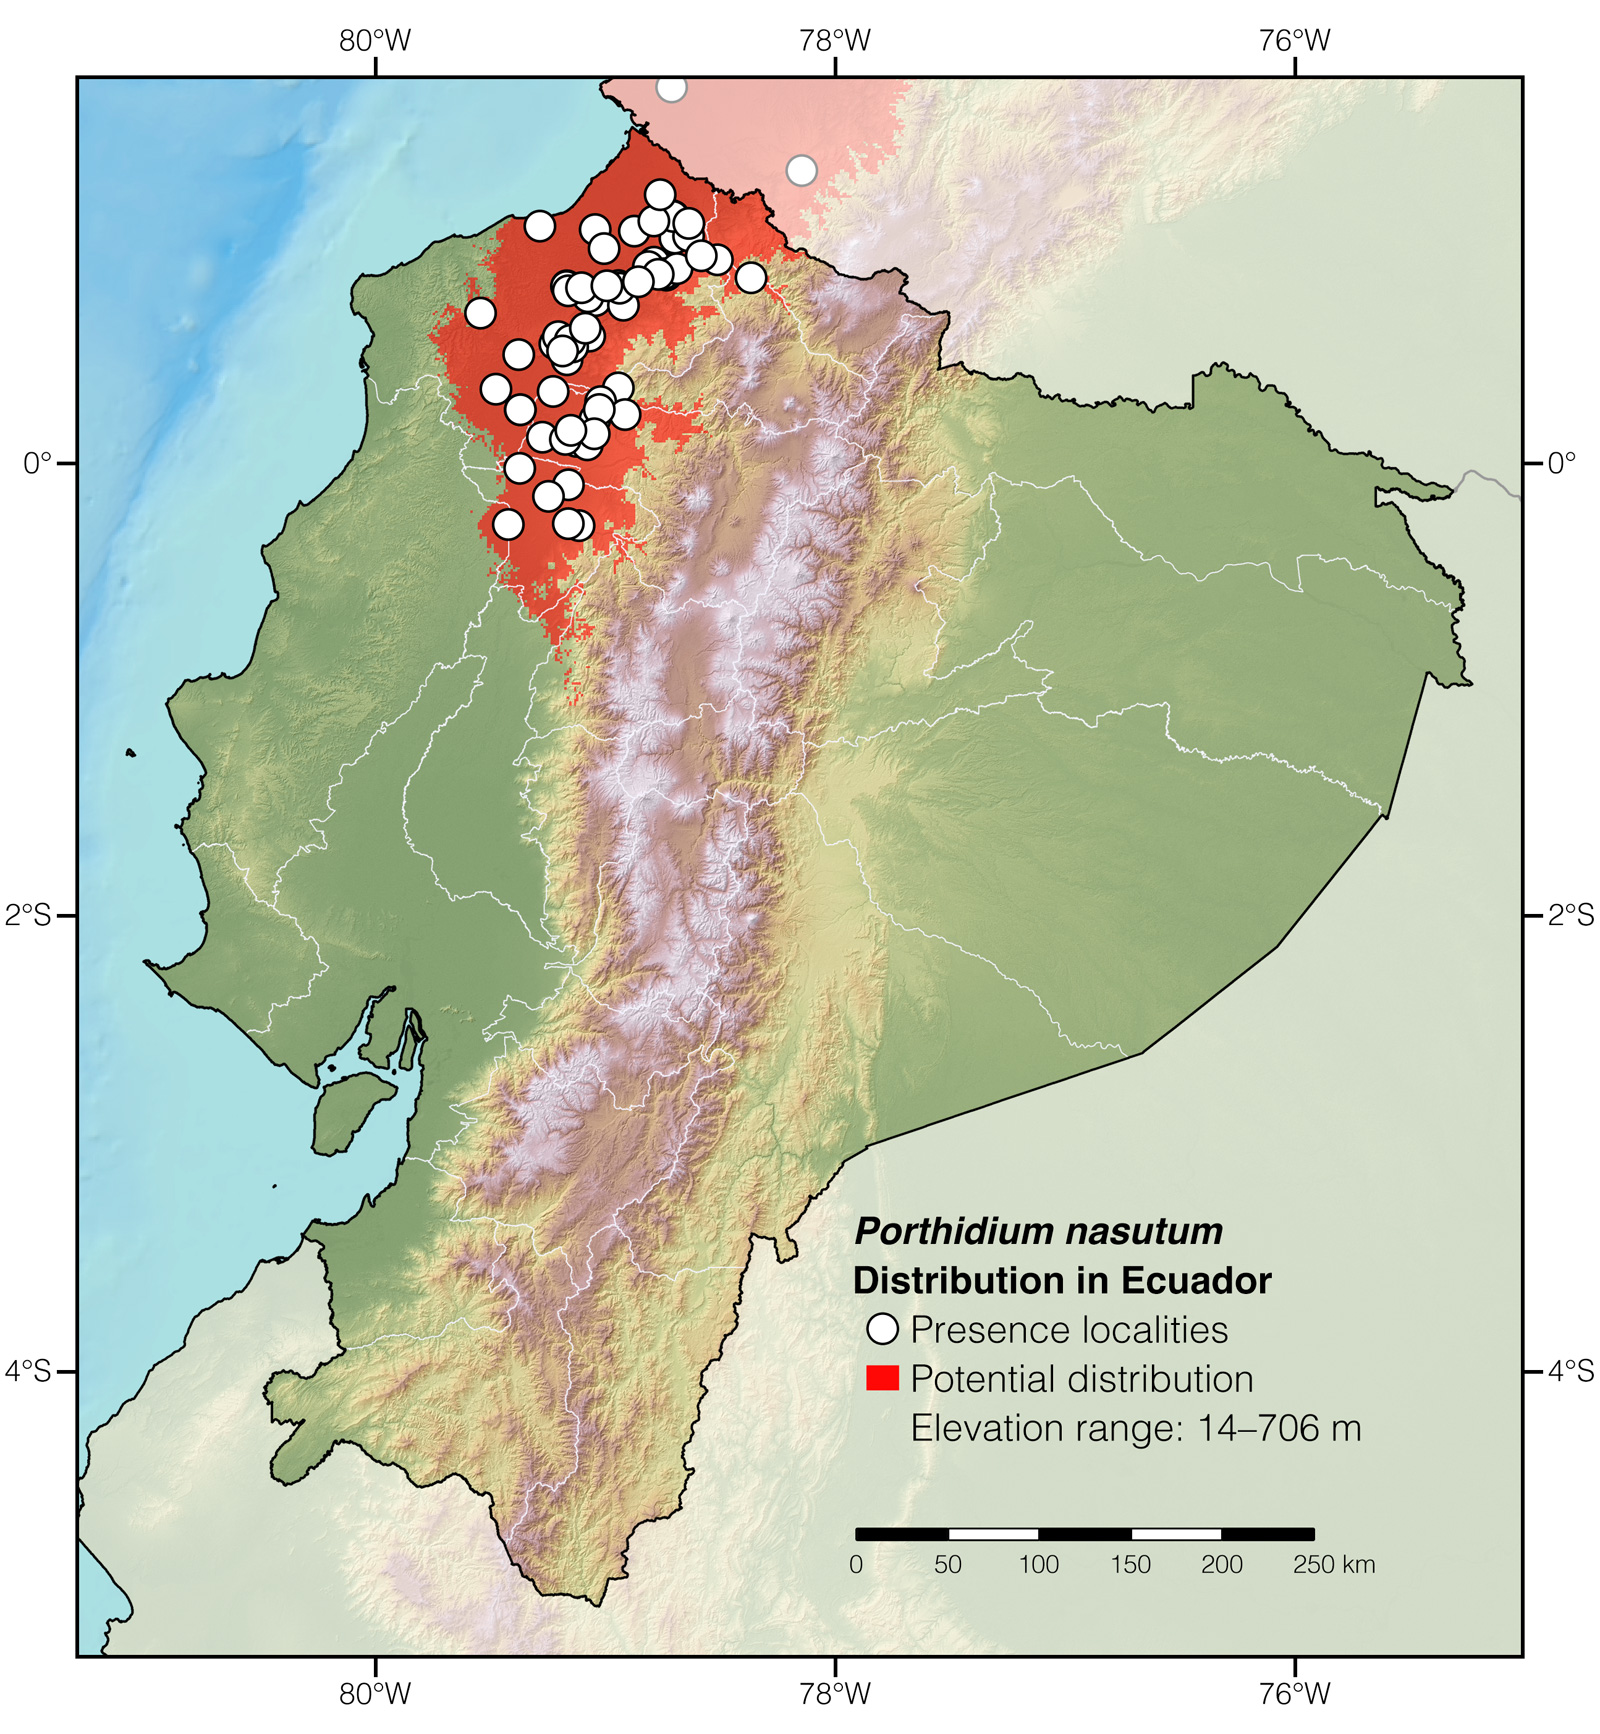 Distribution of Porthidium nasutum in Ecuador